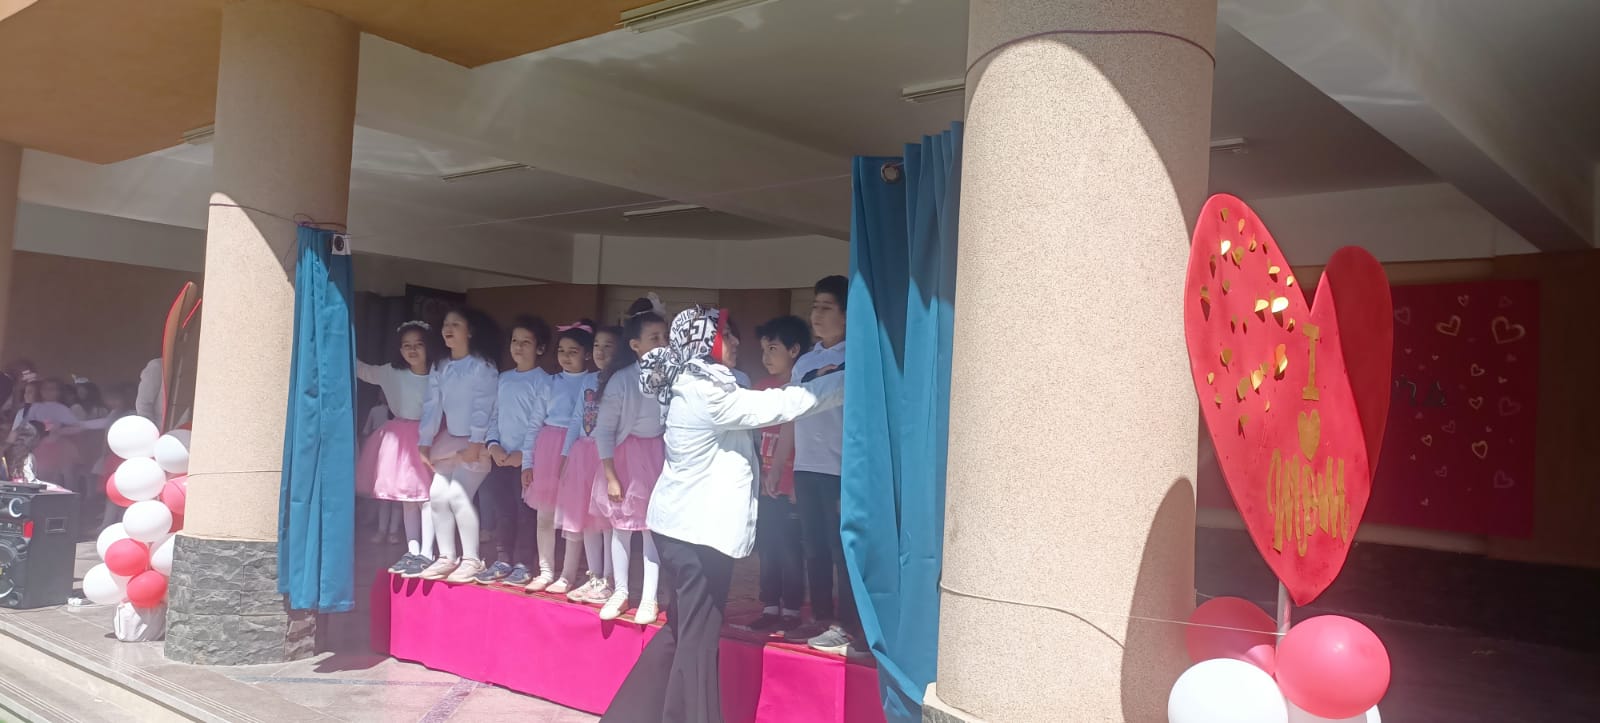 المدرسة الرسمية الدولية تحتفل بعيد الأم بعرض مسرحى